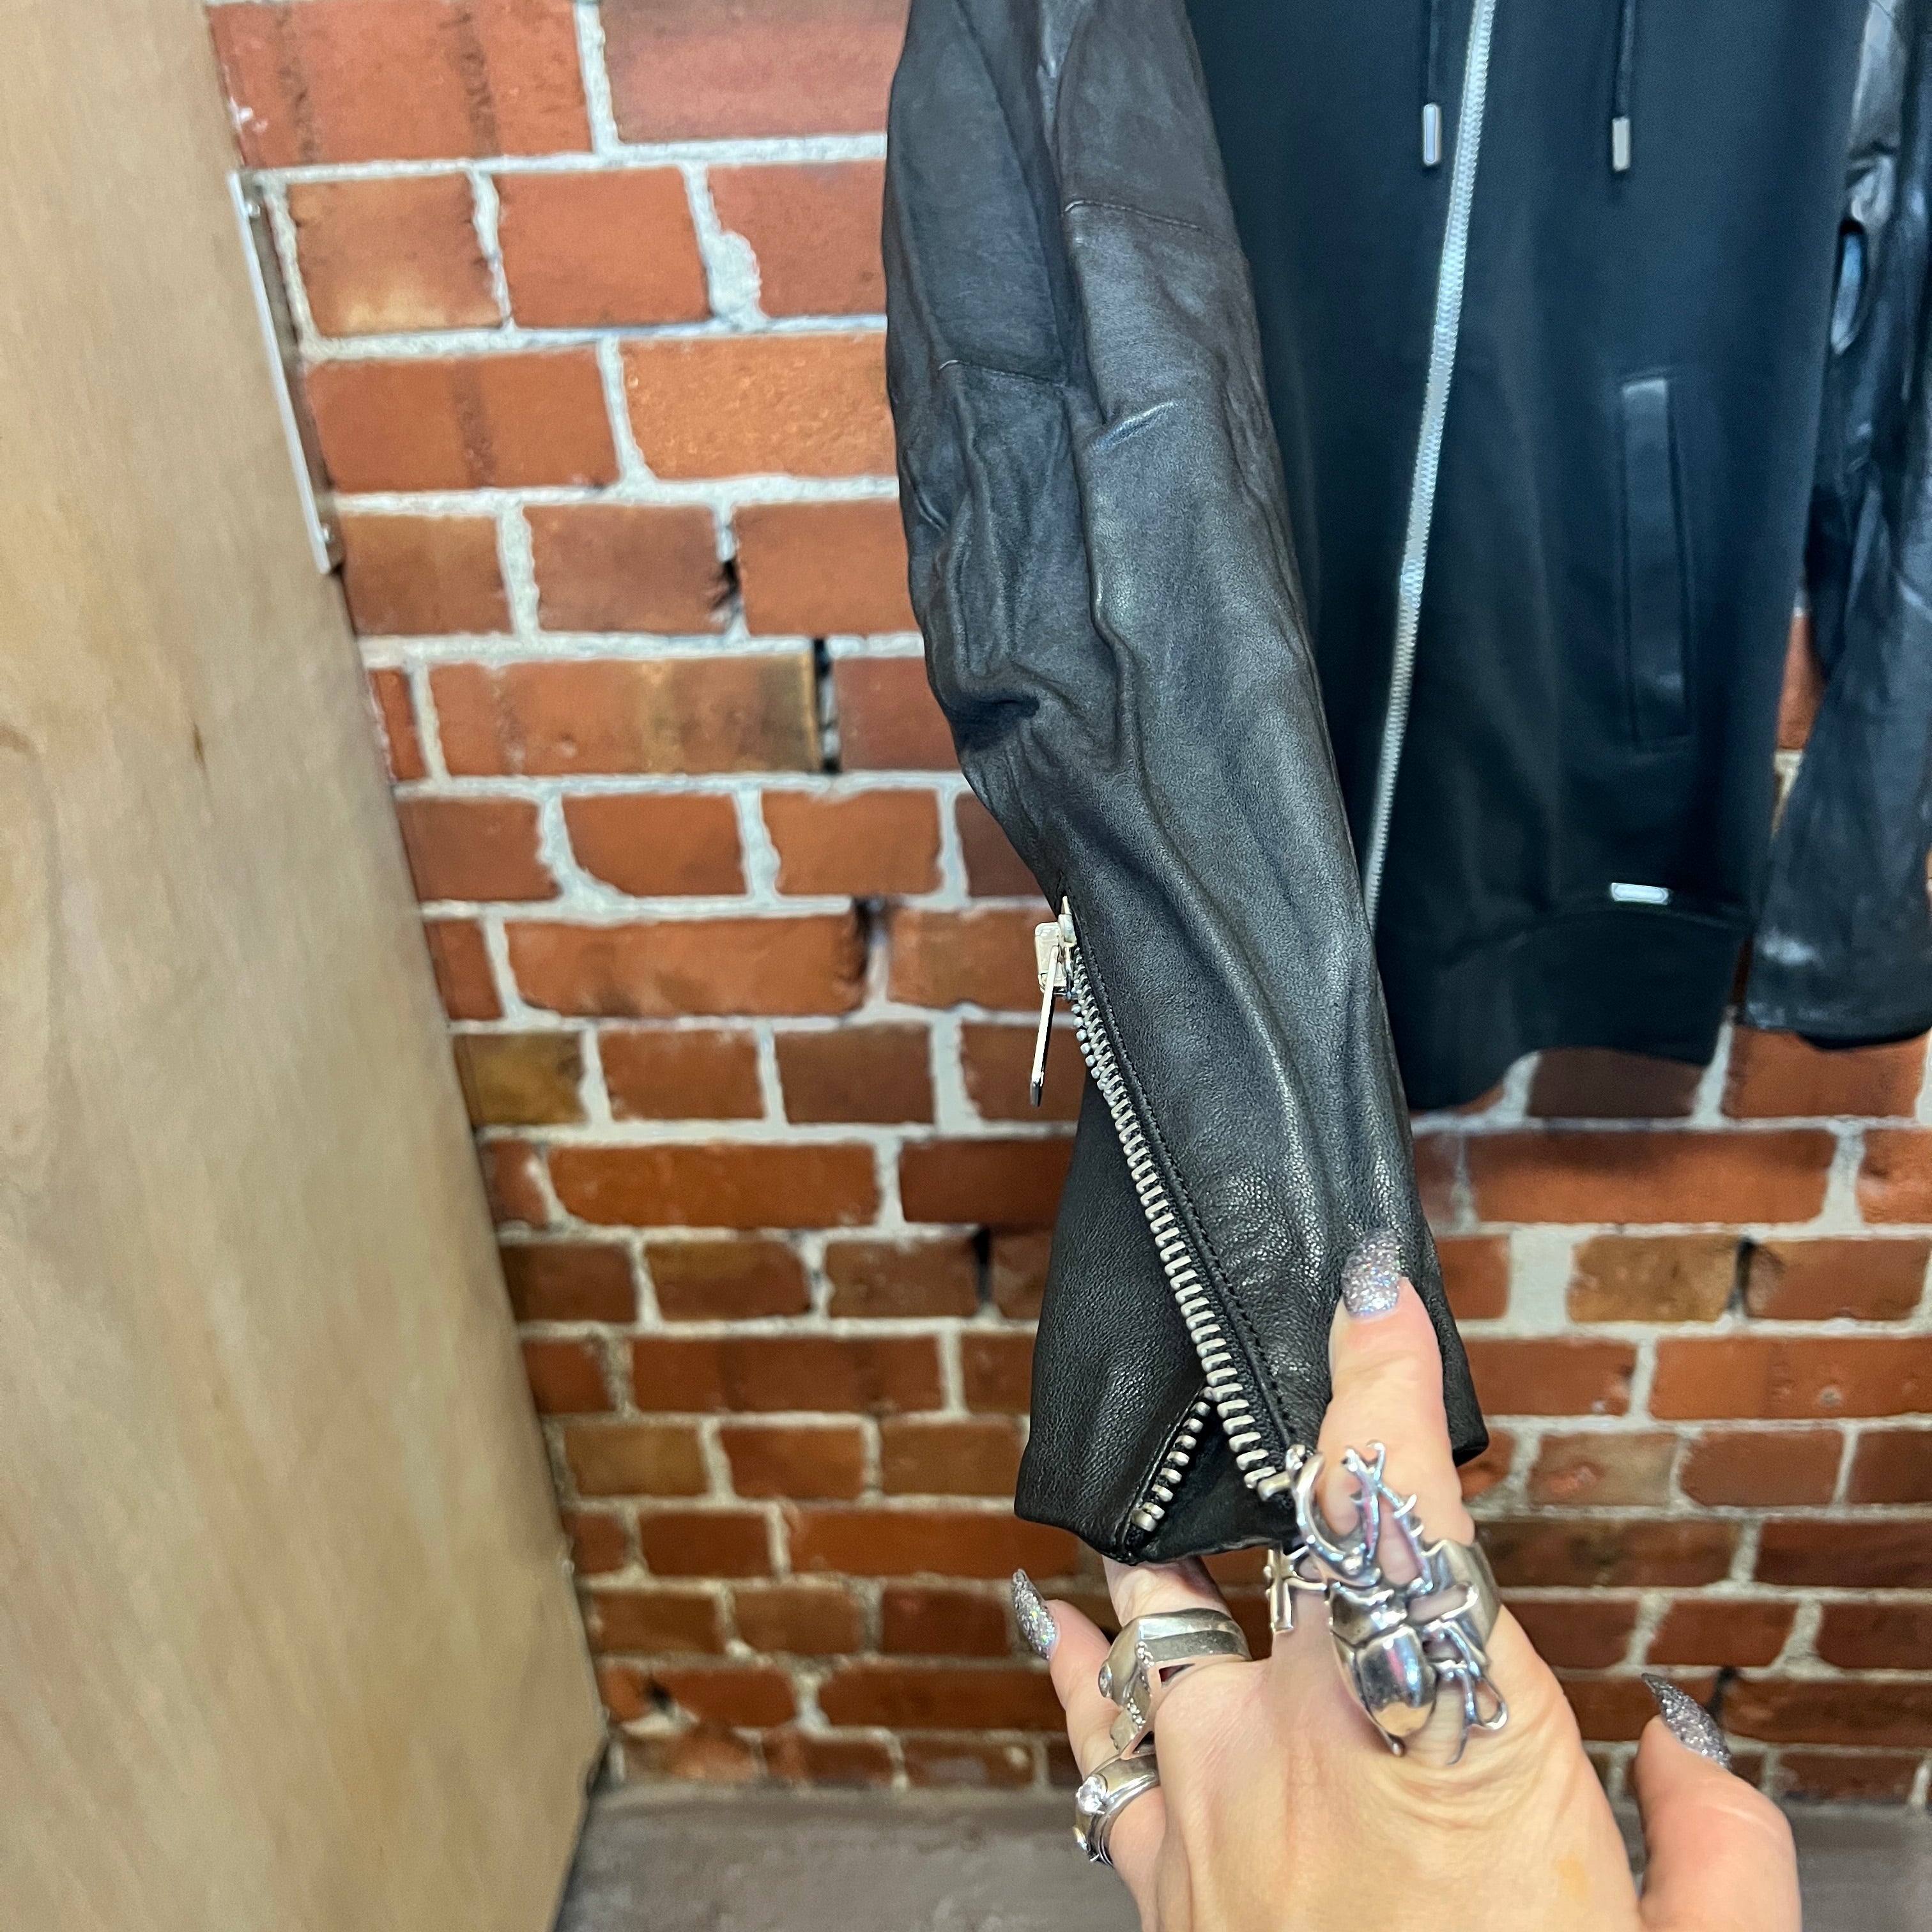 DIESEL leather jacket sleeve hoodie